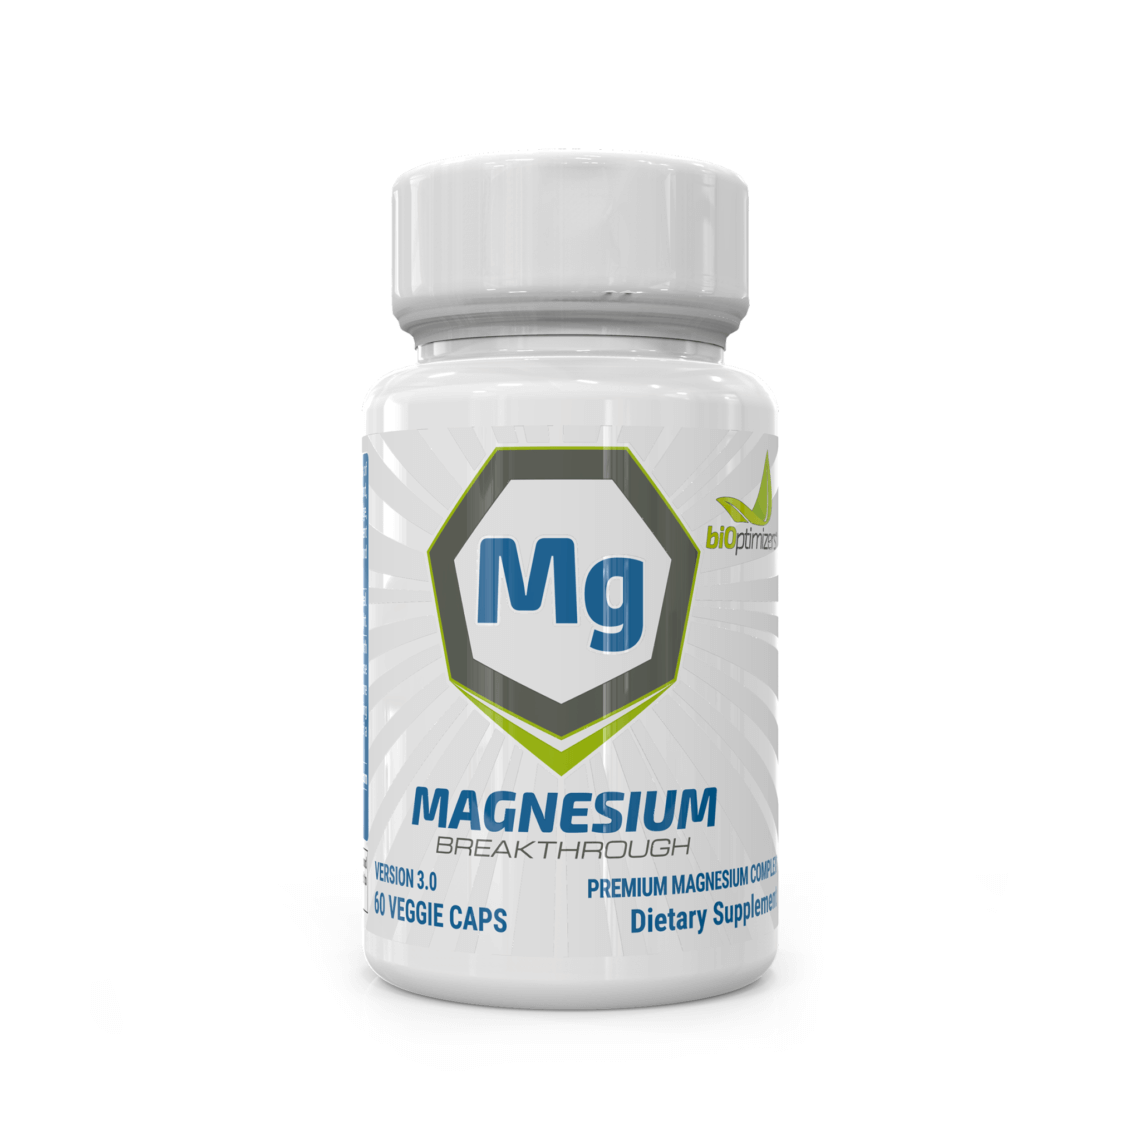 Magnesium Breakthrough Review - Magnesium Powder Supplement